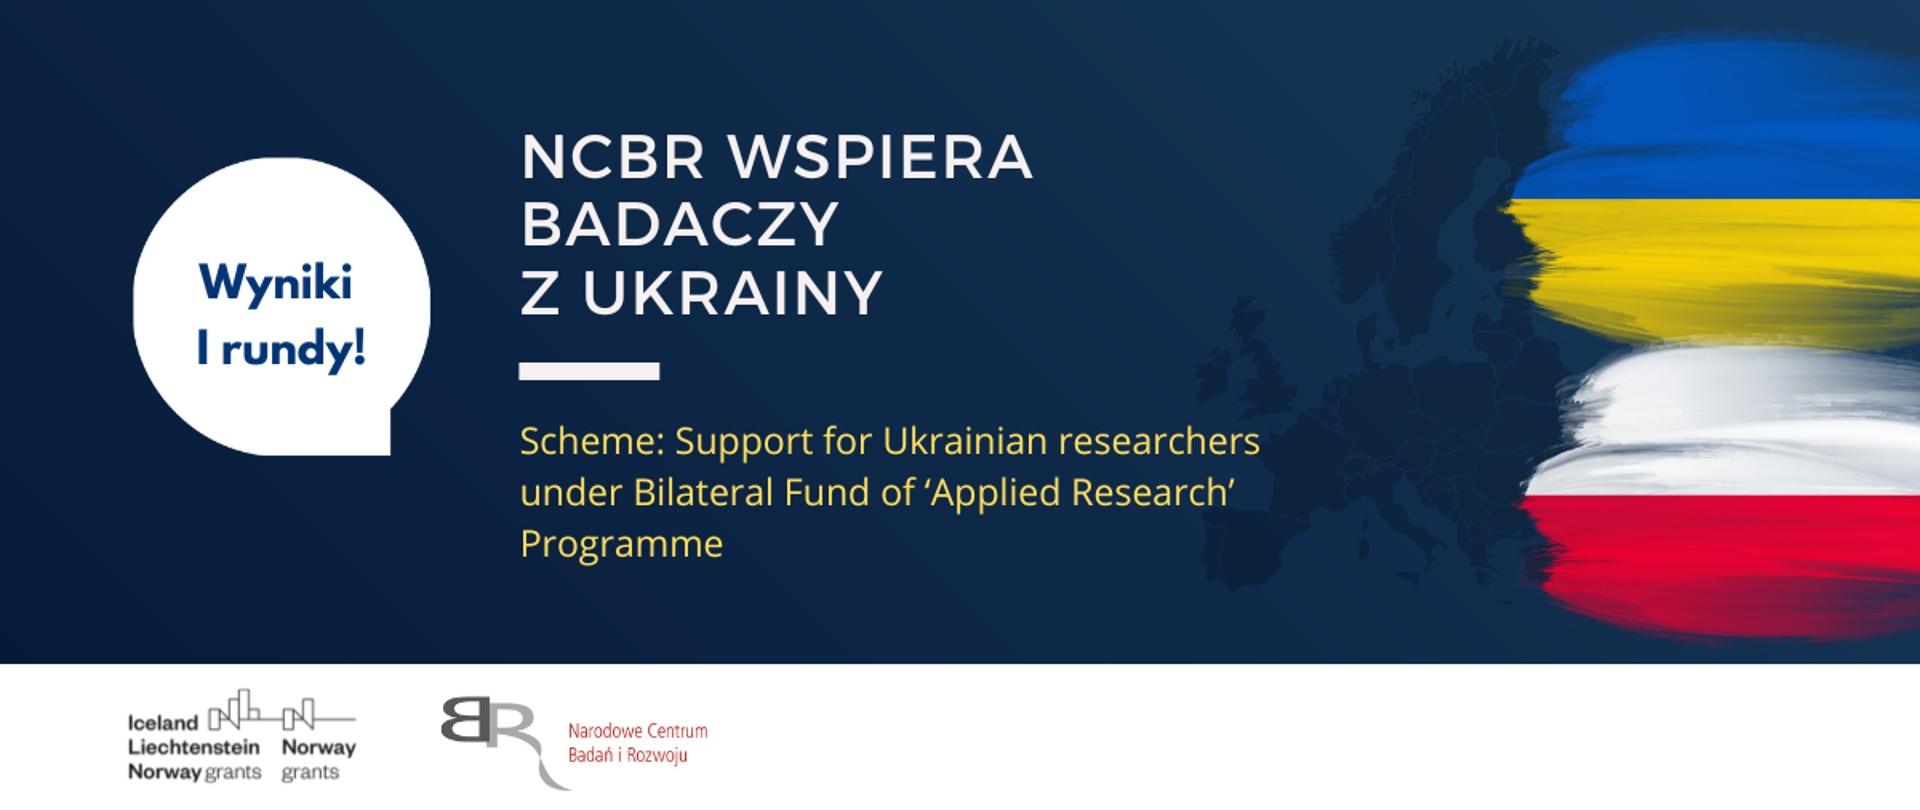 Wsparcie dla ukraińskich naukowców.
Rozstrzygnięcie I rundy przedsięwzięcia realizowanego przez NCBR
